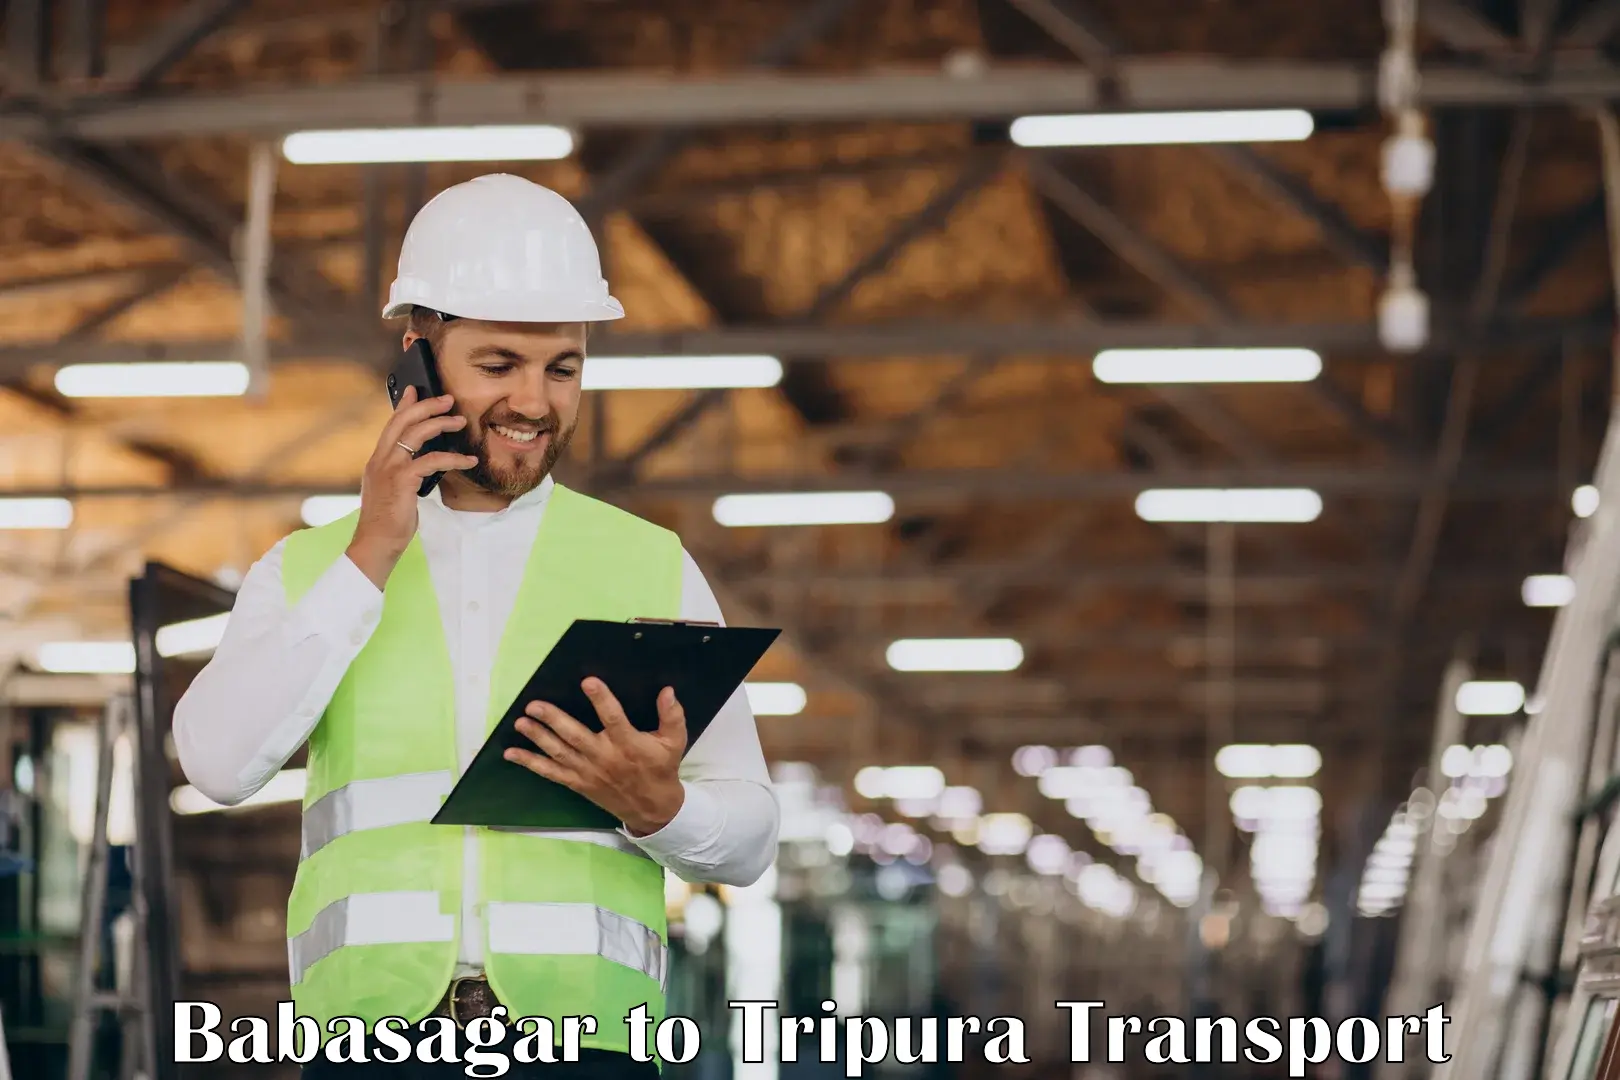 Furniture transport service Babasagar to Udaipur Tripura